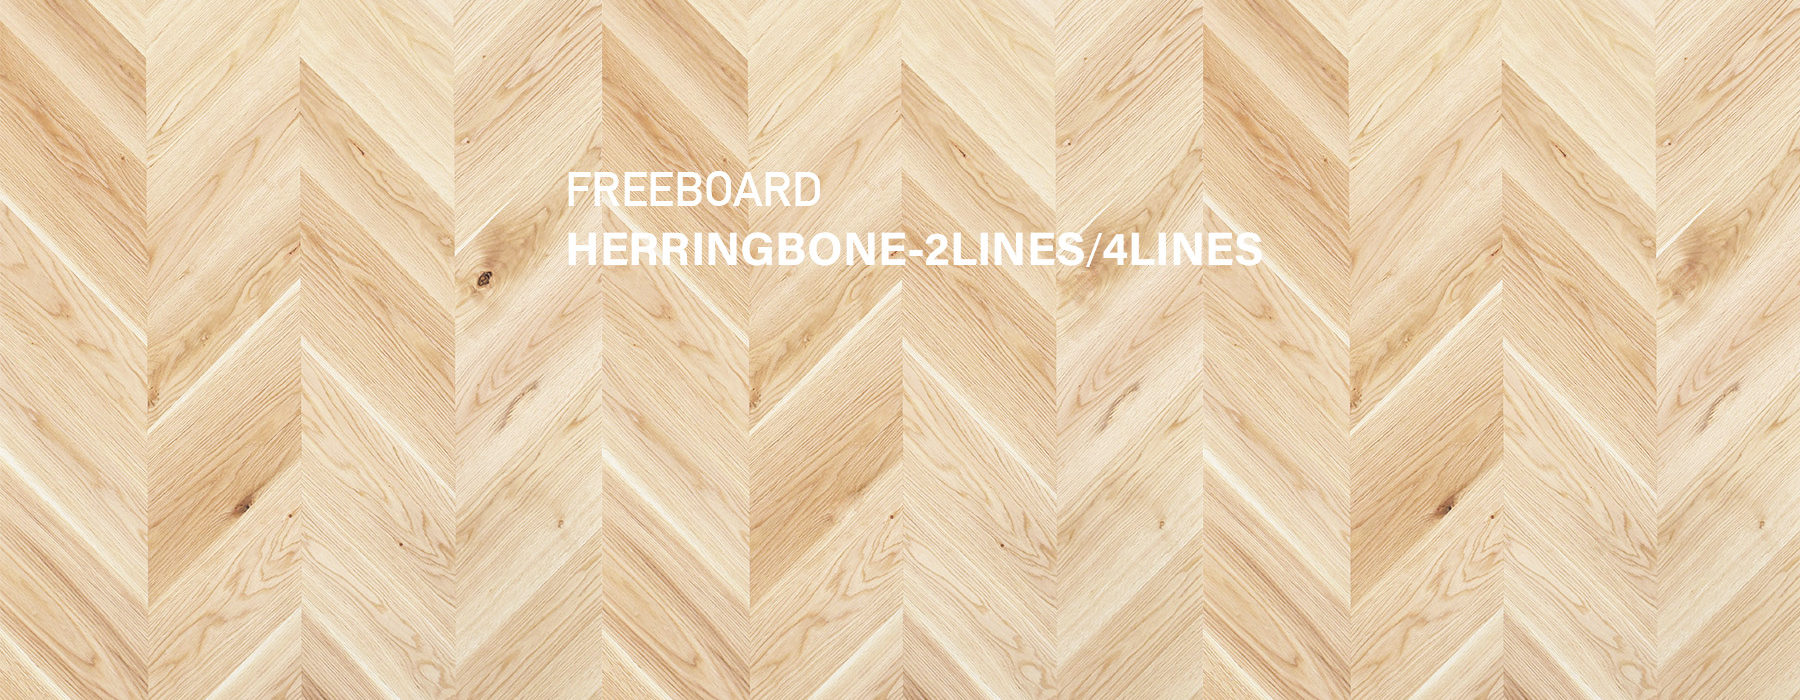 HERRINGBONE-2LINES/4LINES